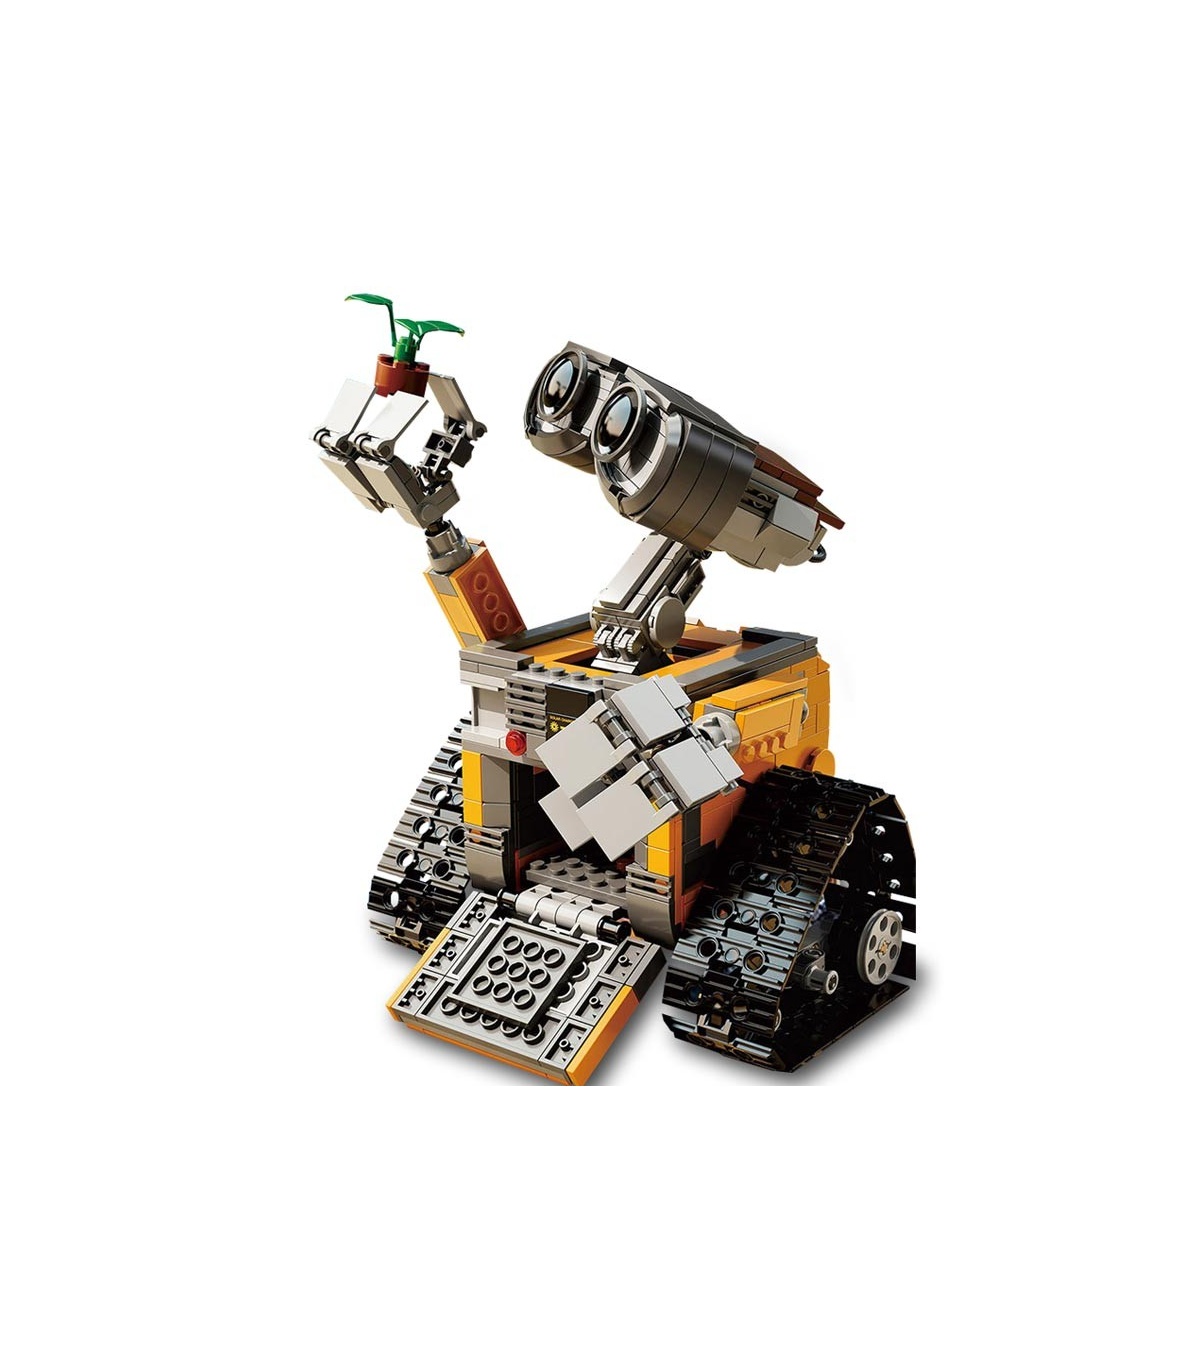 Personnalisé WALL E les Idées de la Série Compatible Briques de Construction Jouet Jeu